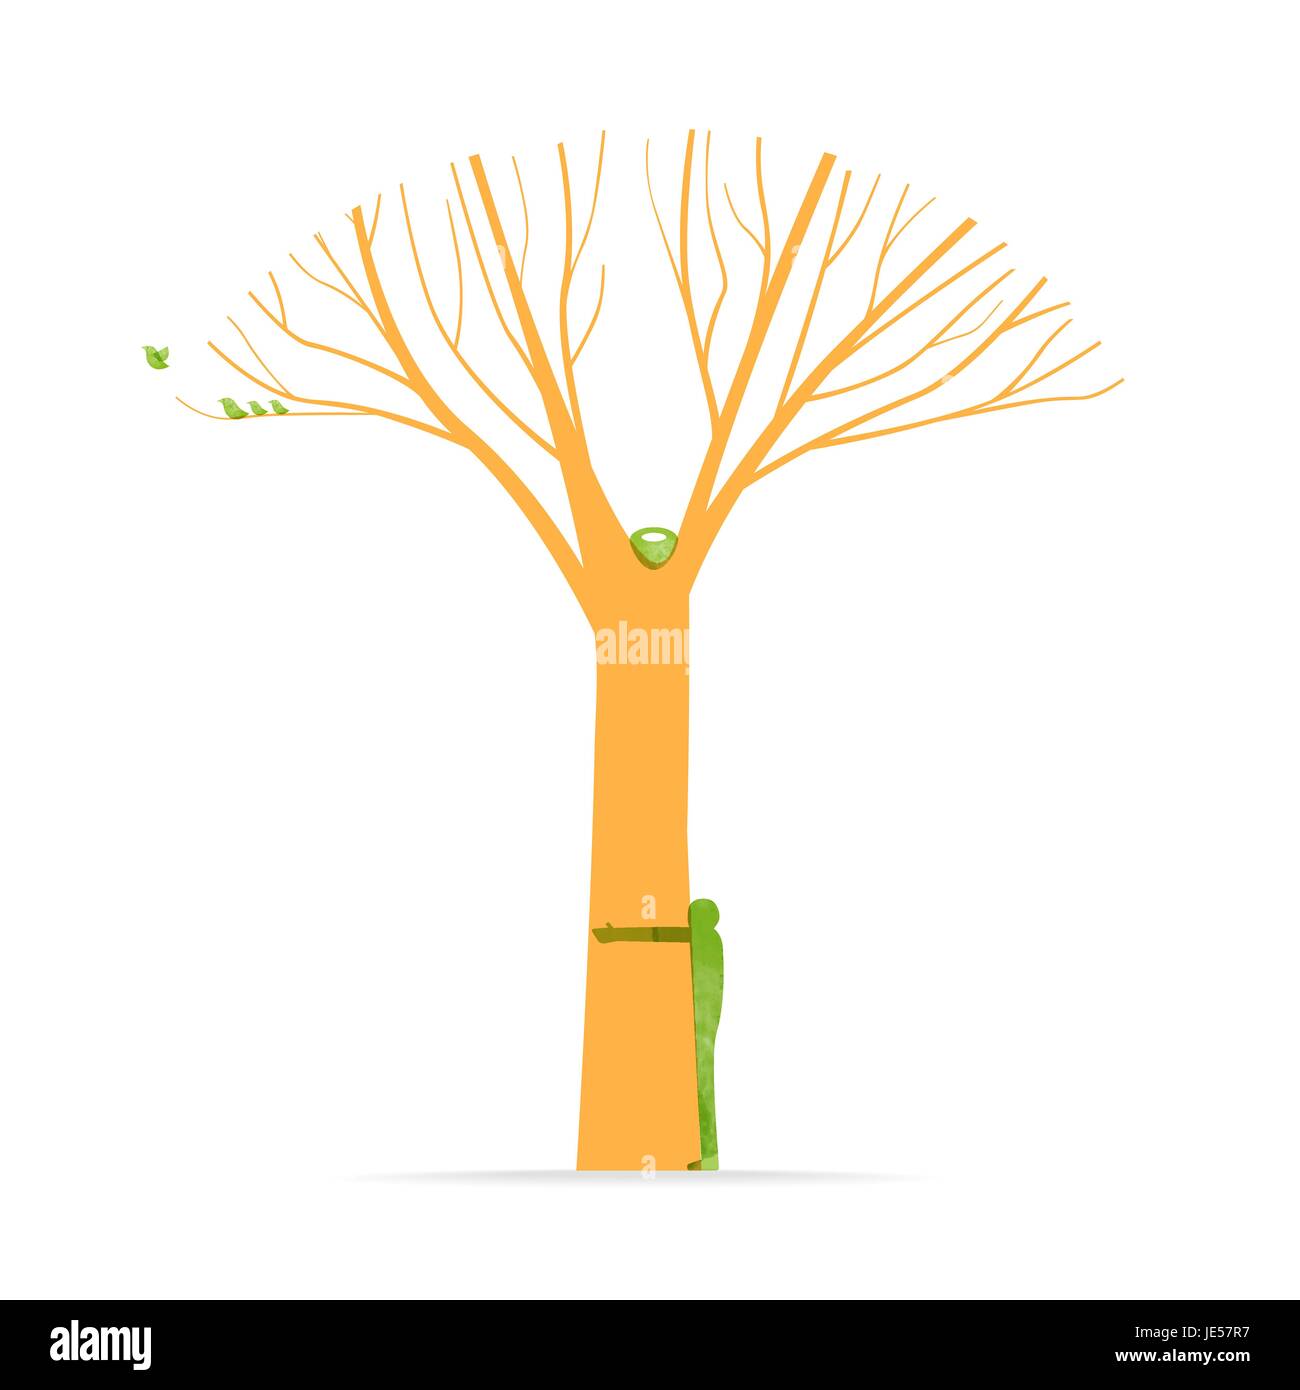 Baum umarmen Illustration mit Mann Silhouette und Vögel, Umwelt Liebe Konzeptdesign für Natur-Help-Projekt. EPS10 Vektor. Stock Vektor